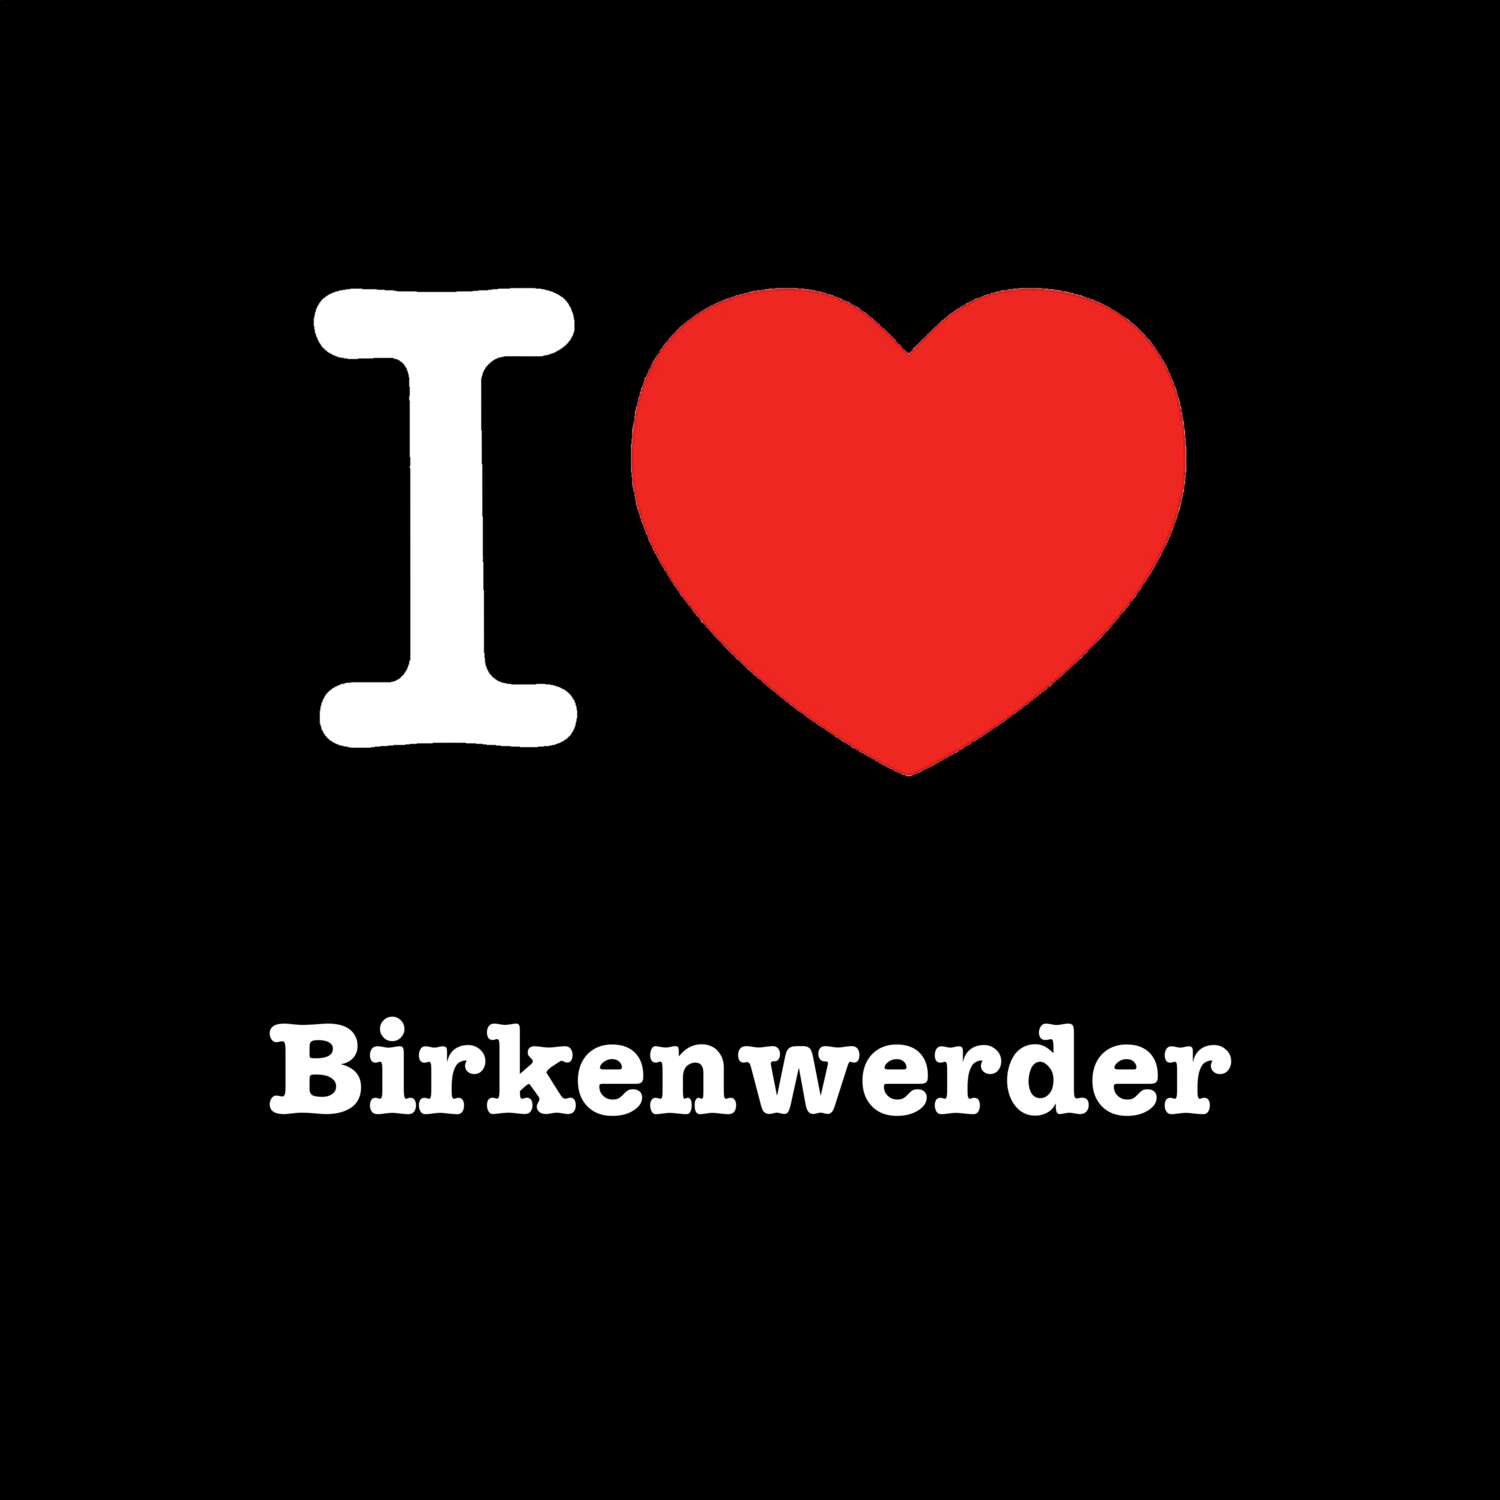 Birkenwerder T-Shirt »I love«